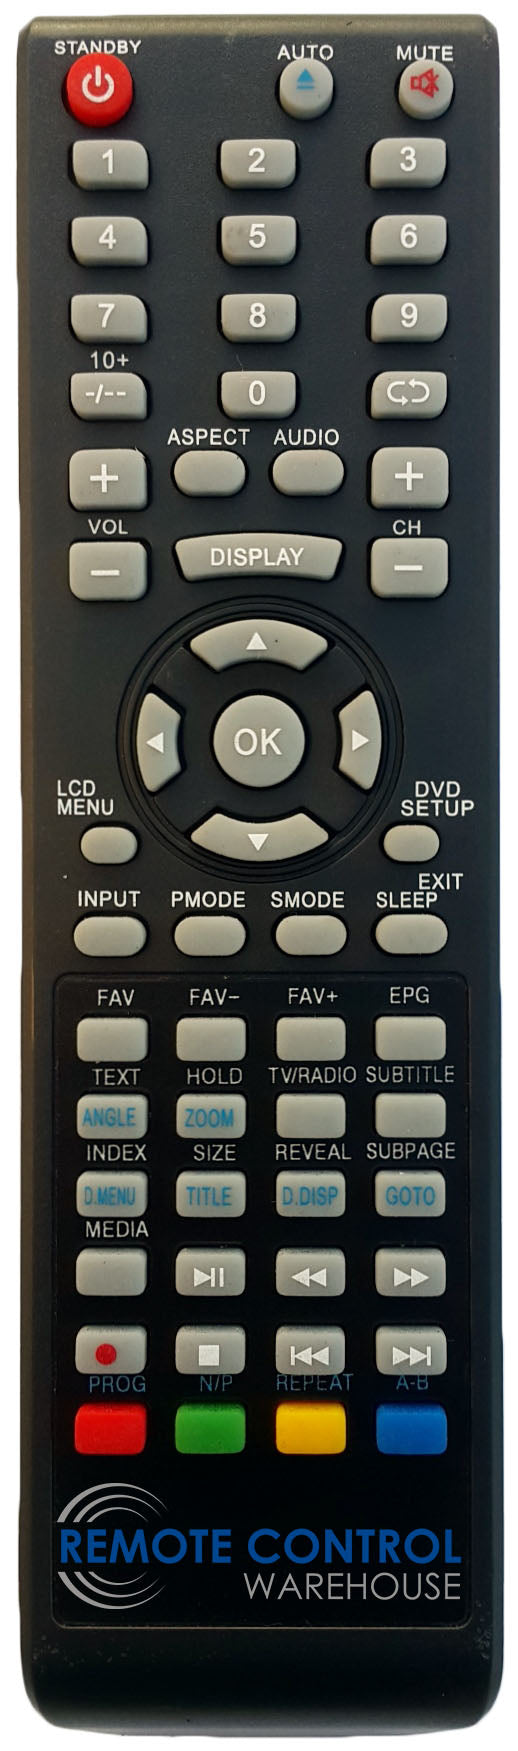 NEONIQ REPLACEMENT REMOTE CONTROL FOR NEONIQ TCM22FHDDVD TV - Remote Control Warehouse